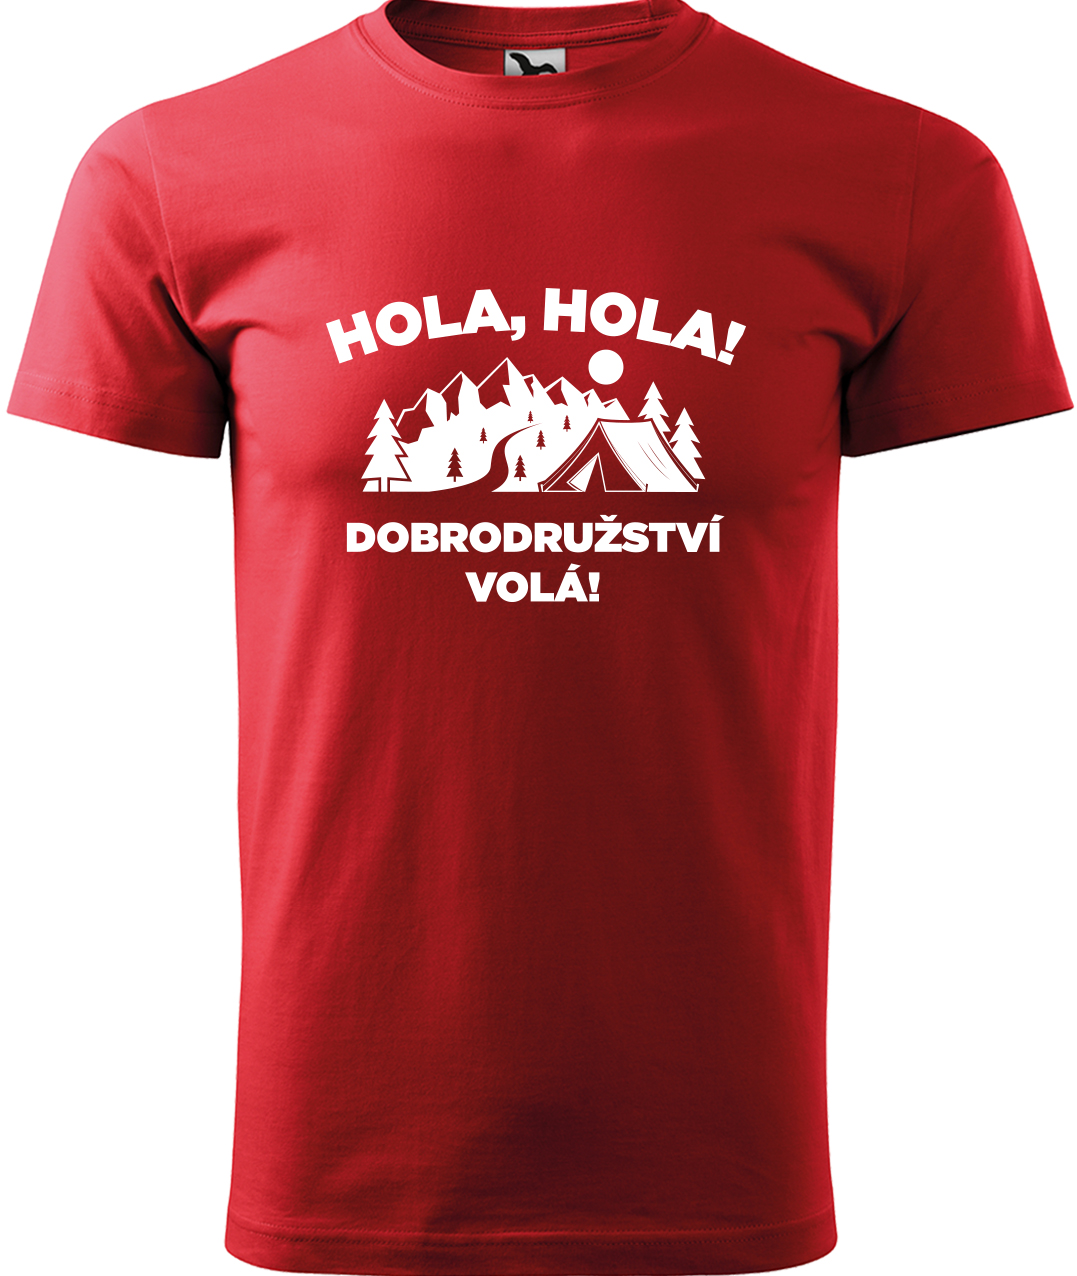 Pánské cestovatelské tričko - Hola hola! Dobrodružství volá! Velikost: L, Barva: Červená (07), Střih: pánský